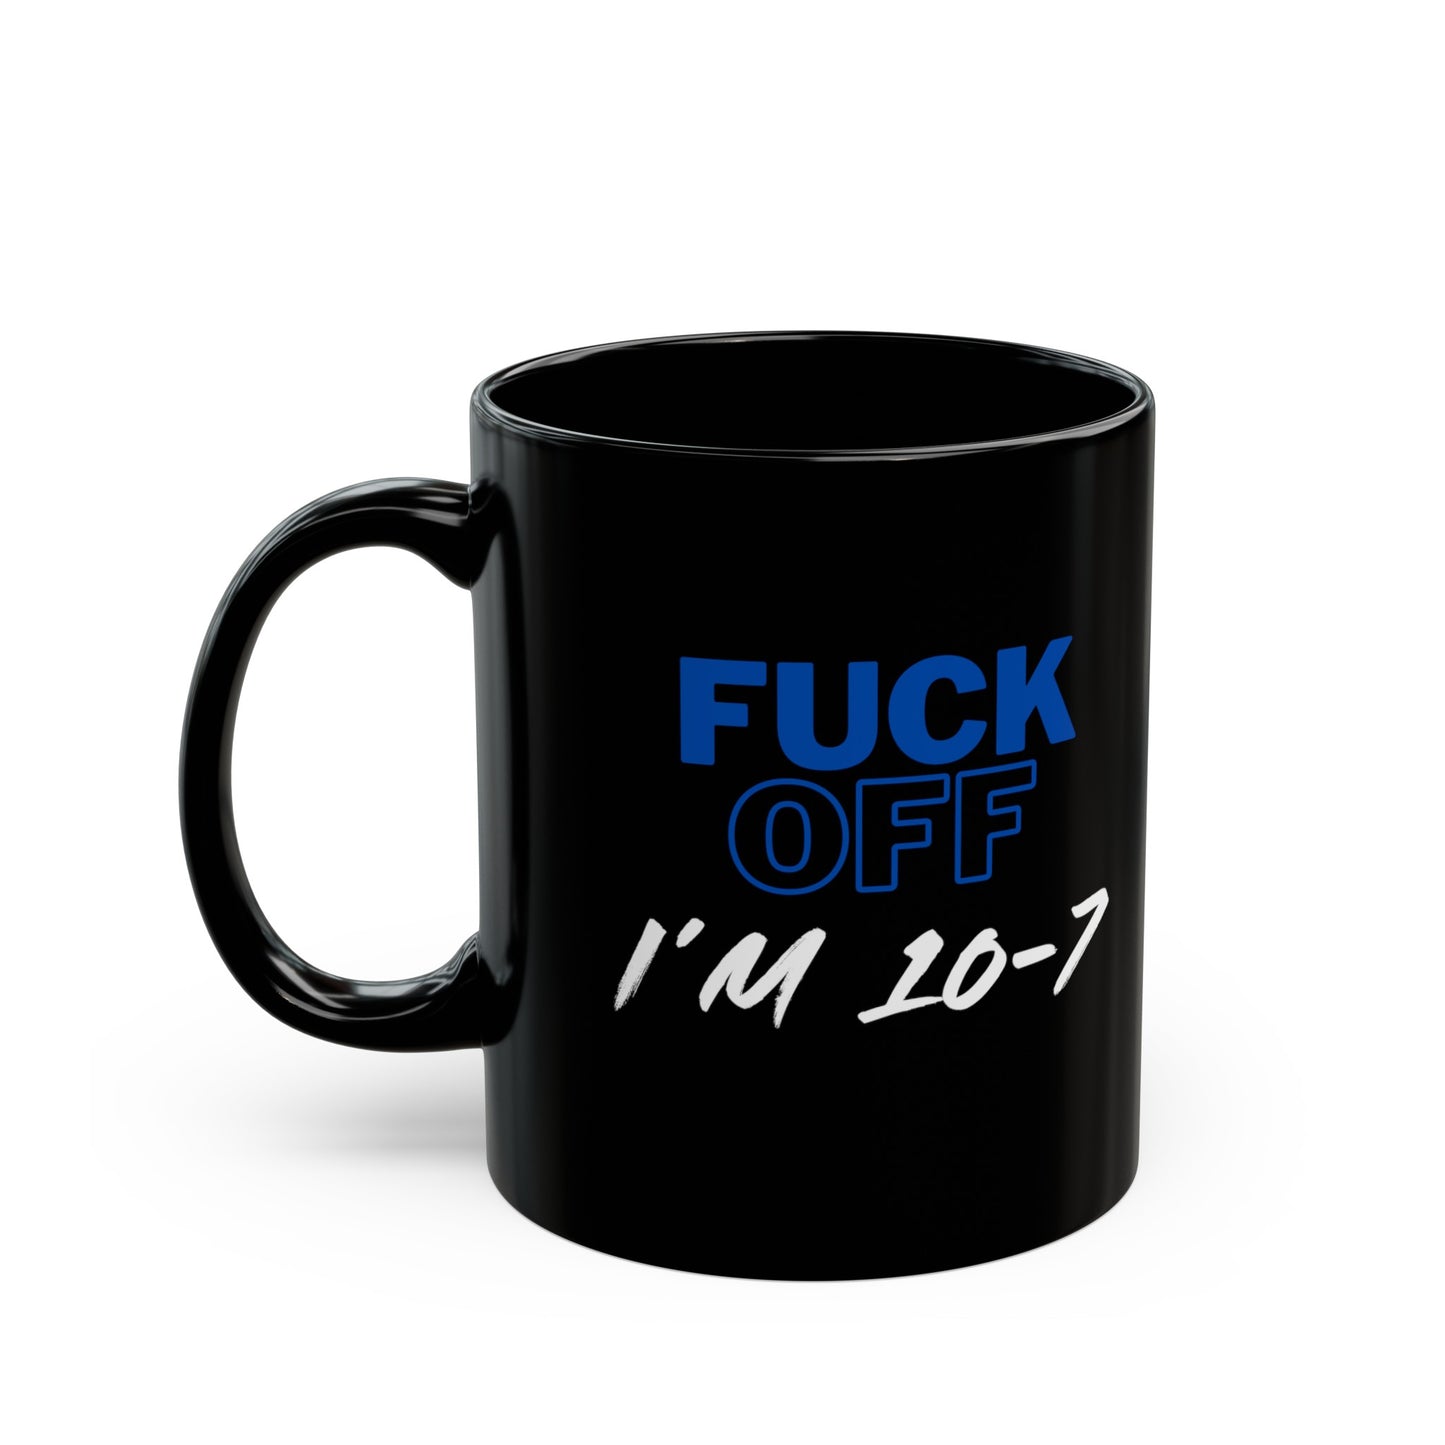 LEO F*** Off 10-7 Coffee Mug